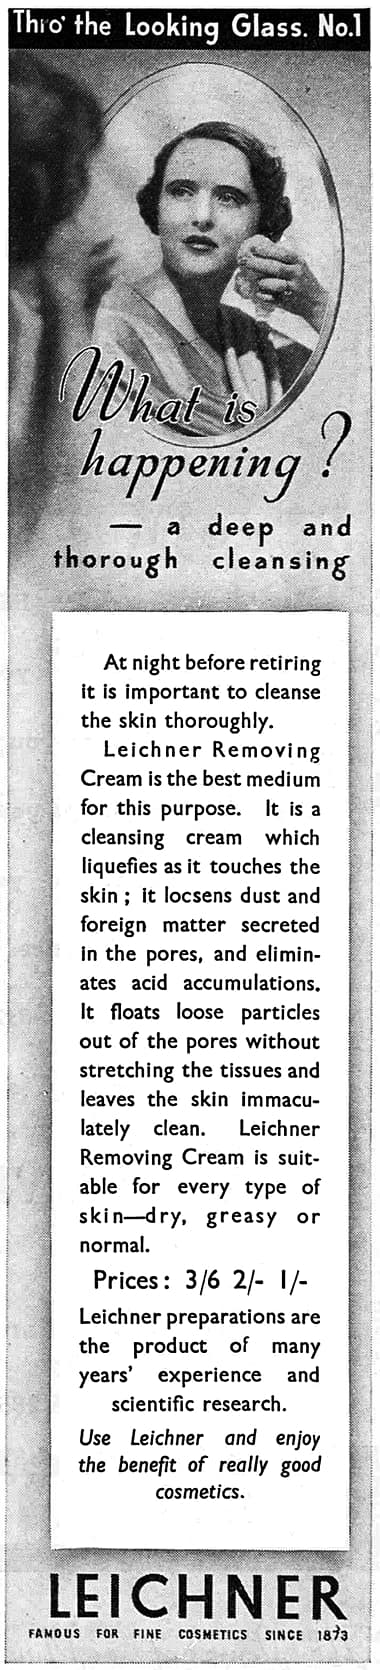 1936 Leichner Removing Cream